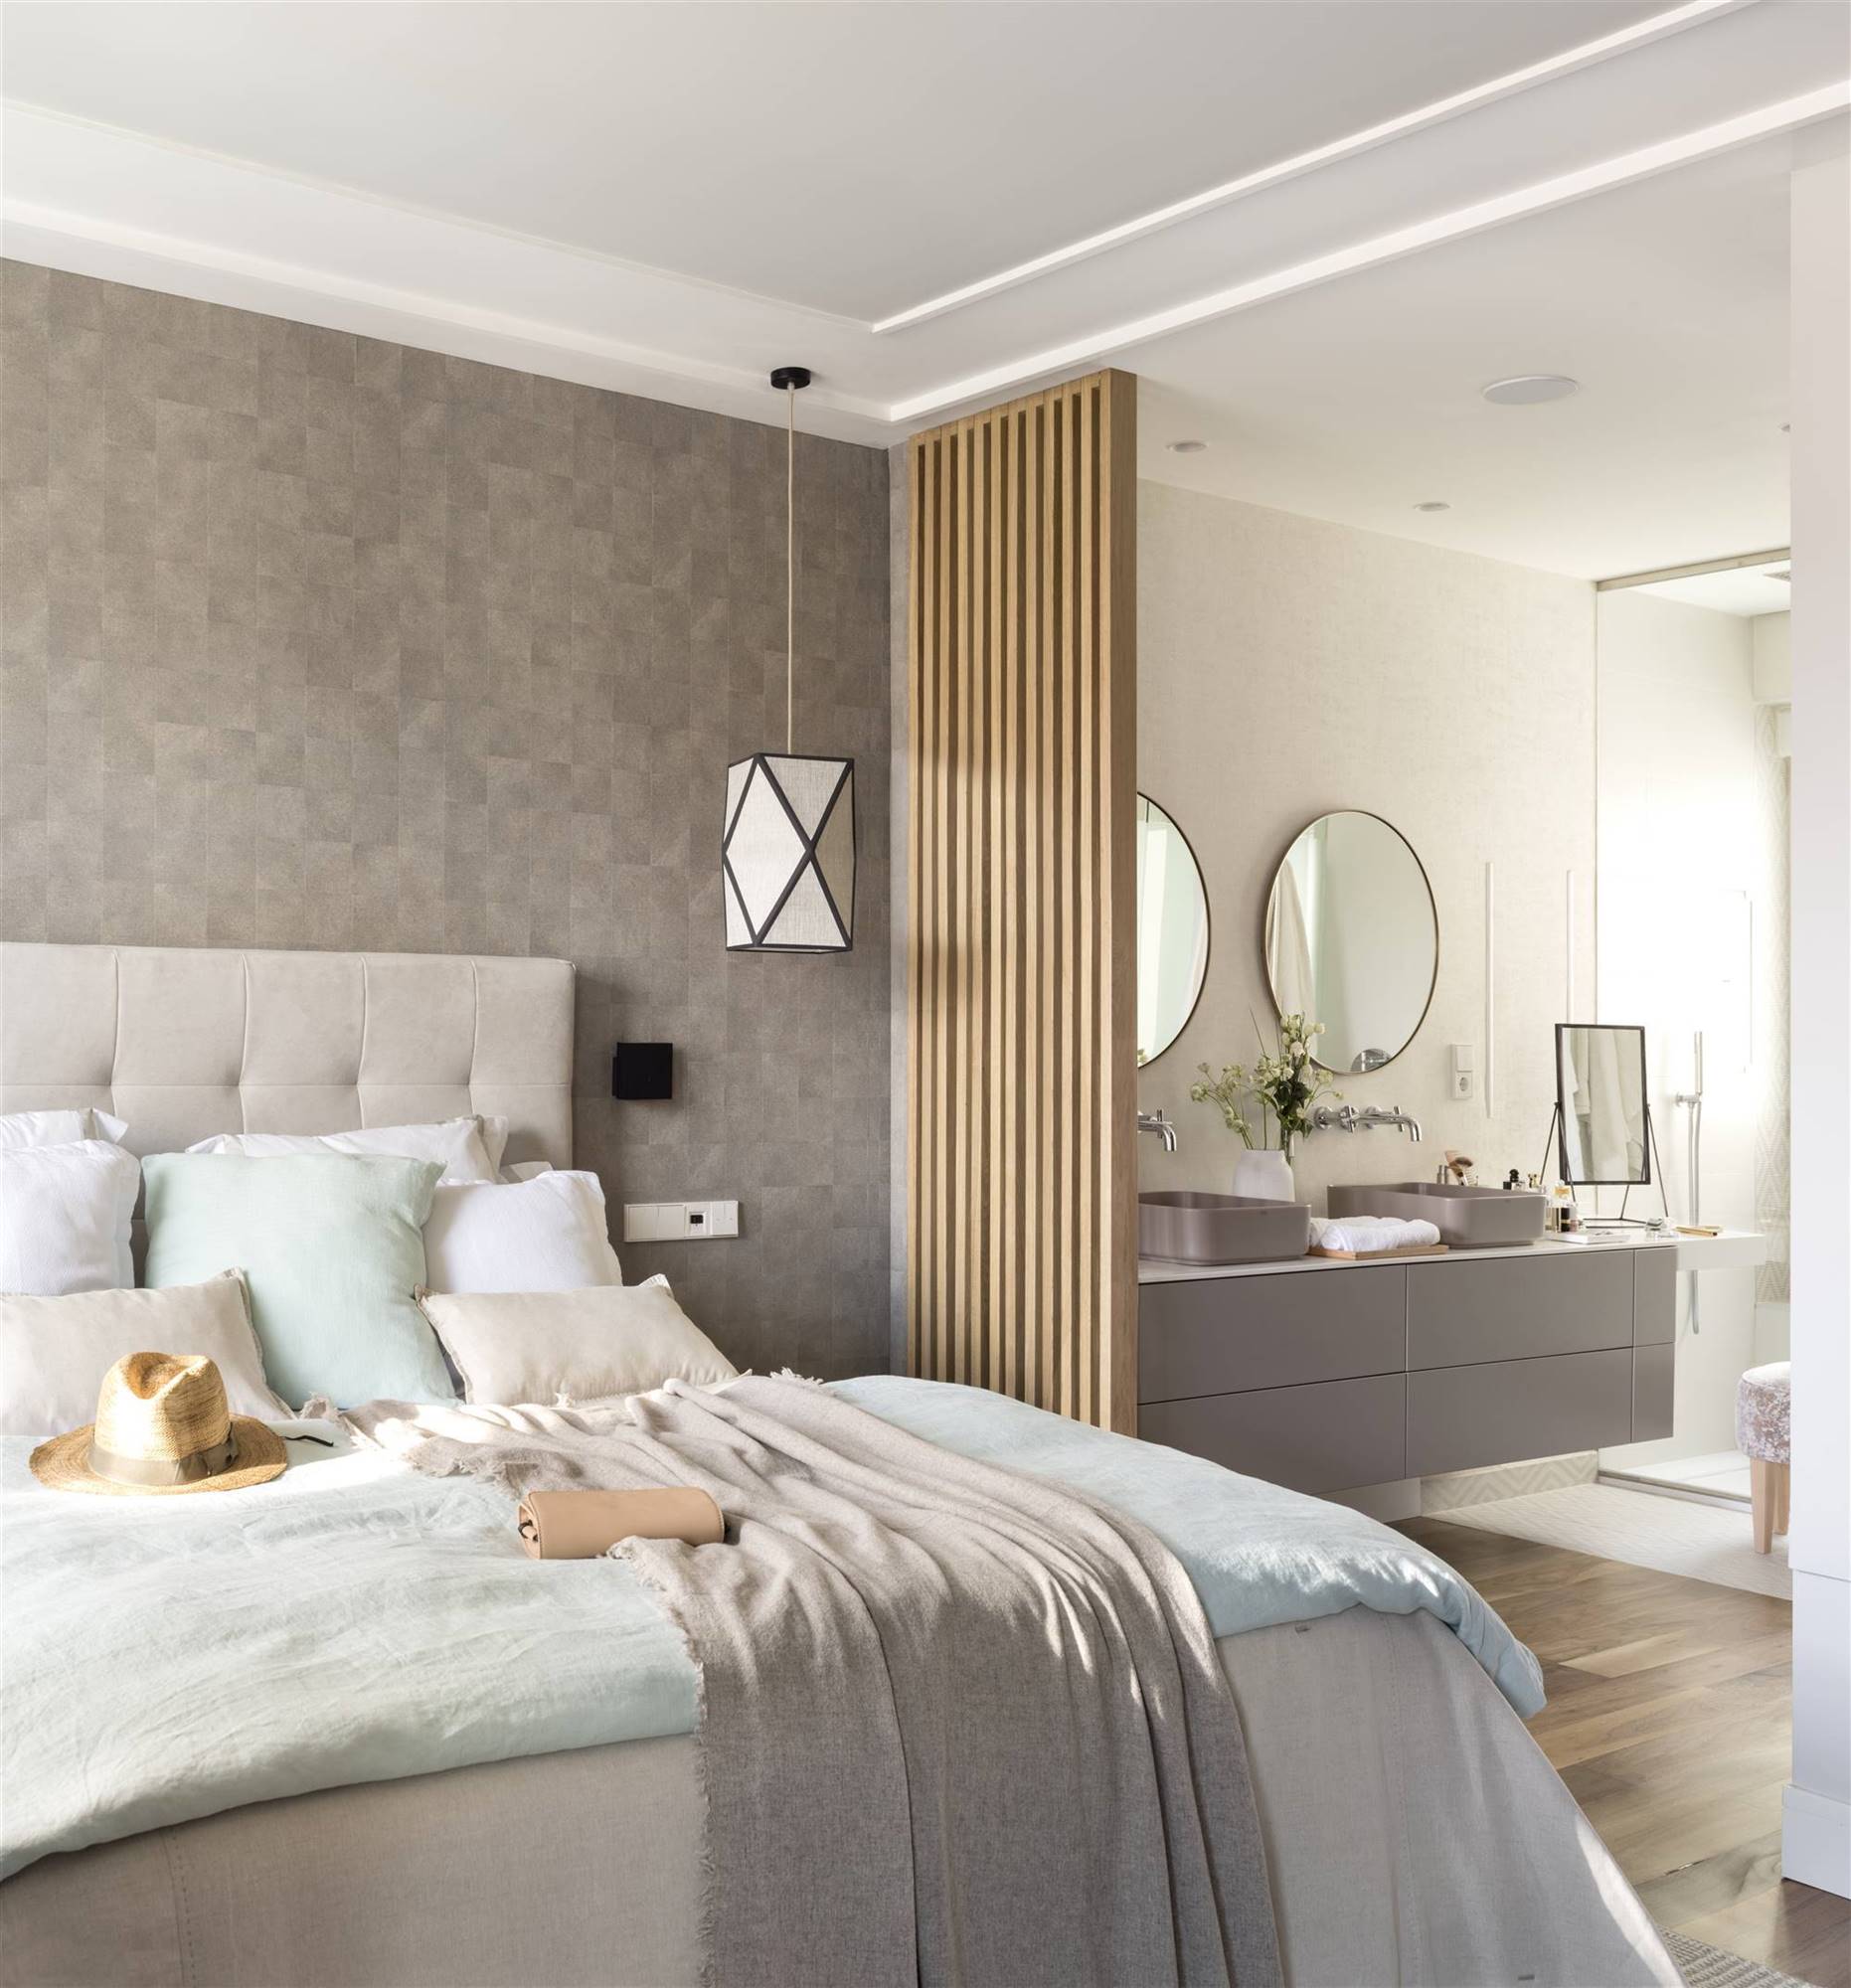 Un dormitorio clásico y actual decorado en tonos neutros.